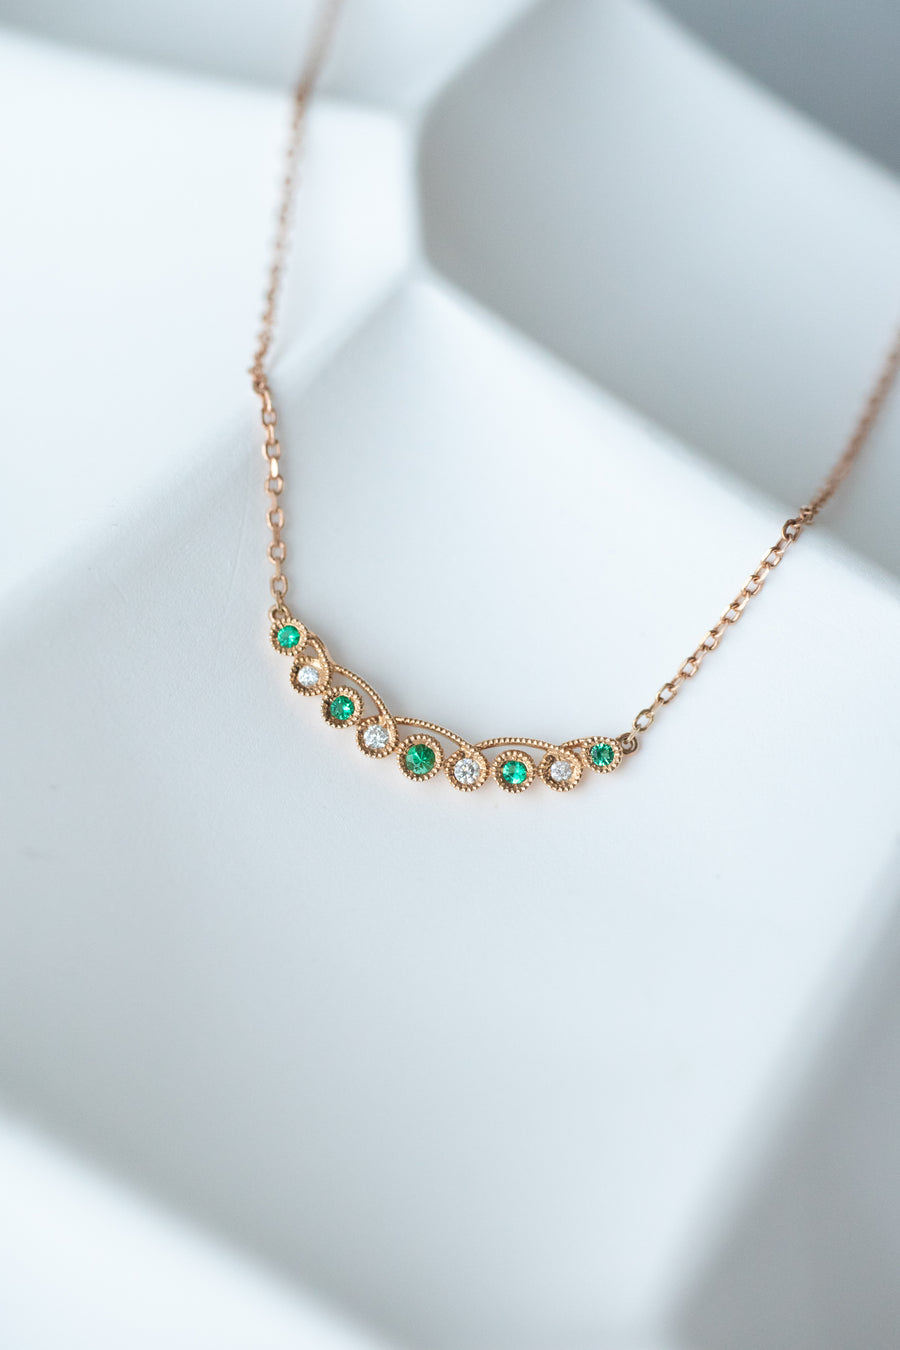 Total 0.045carat Emerald & 0.034carat Natural Diamonds 18K Rose Gold Necklace